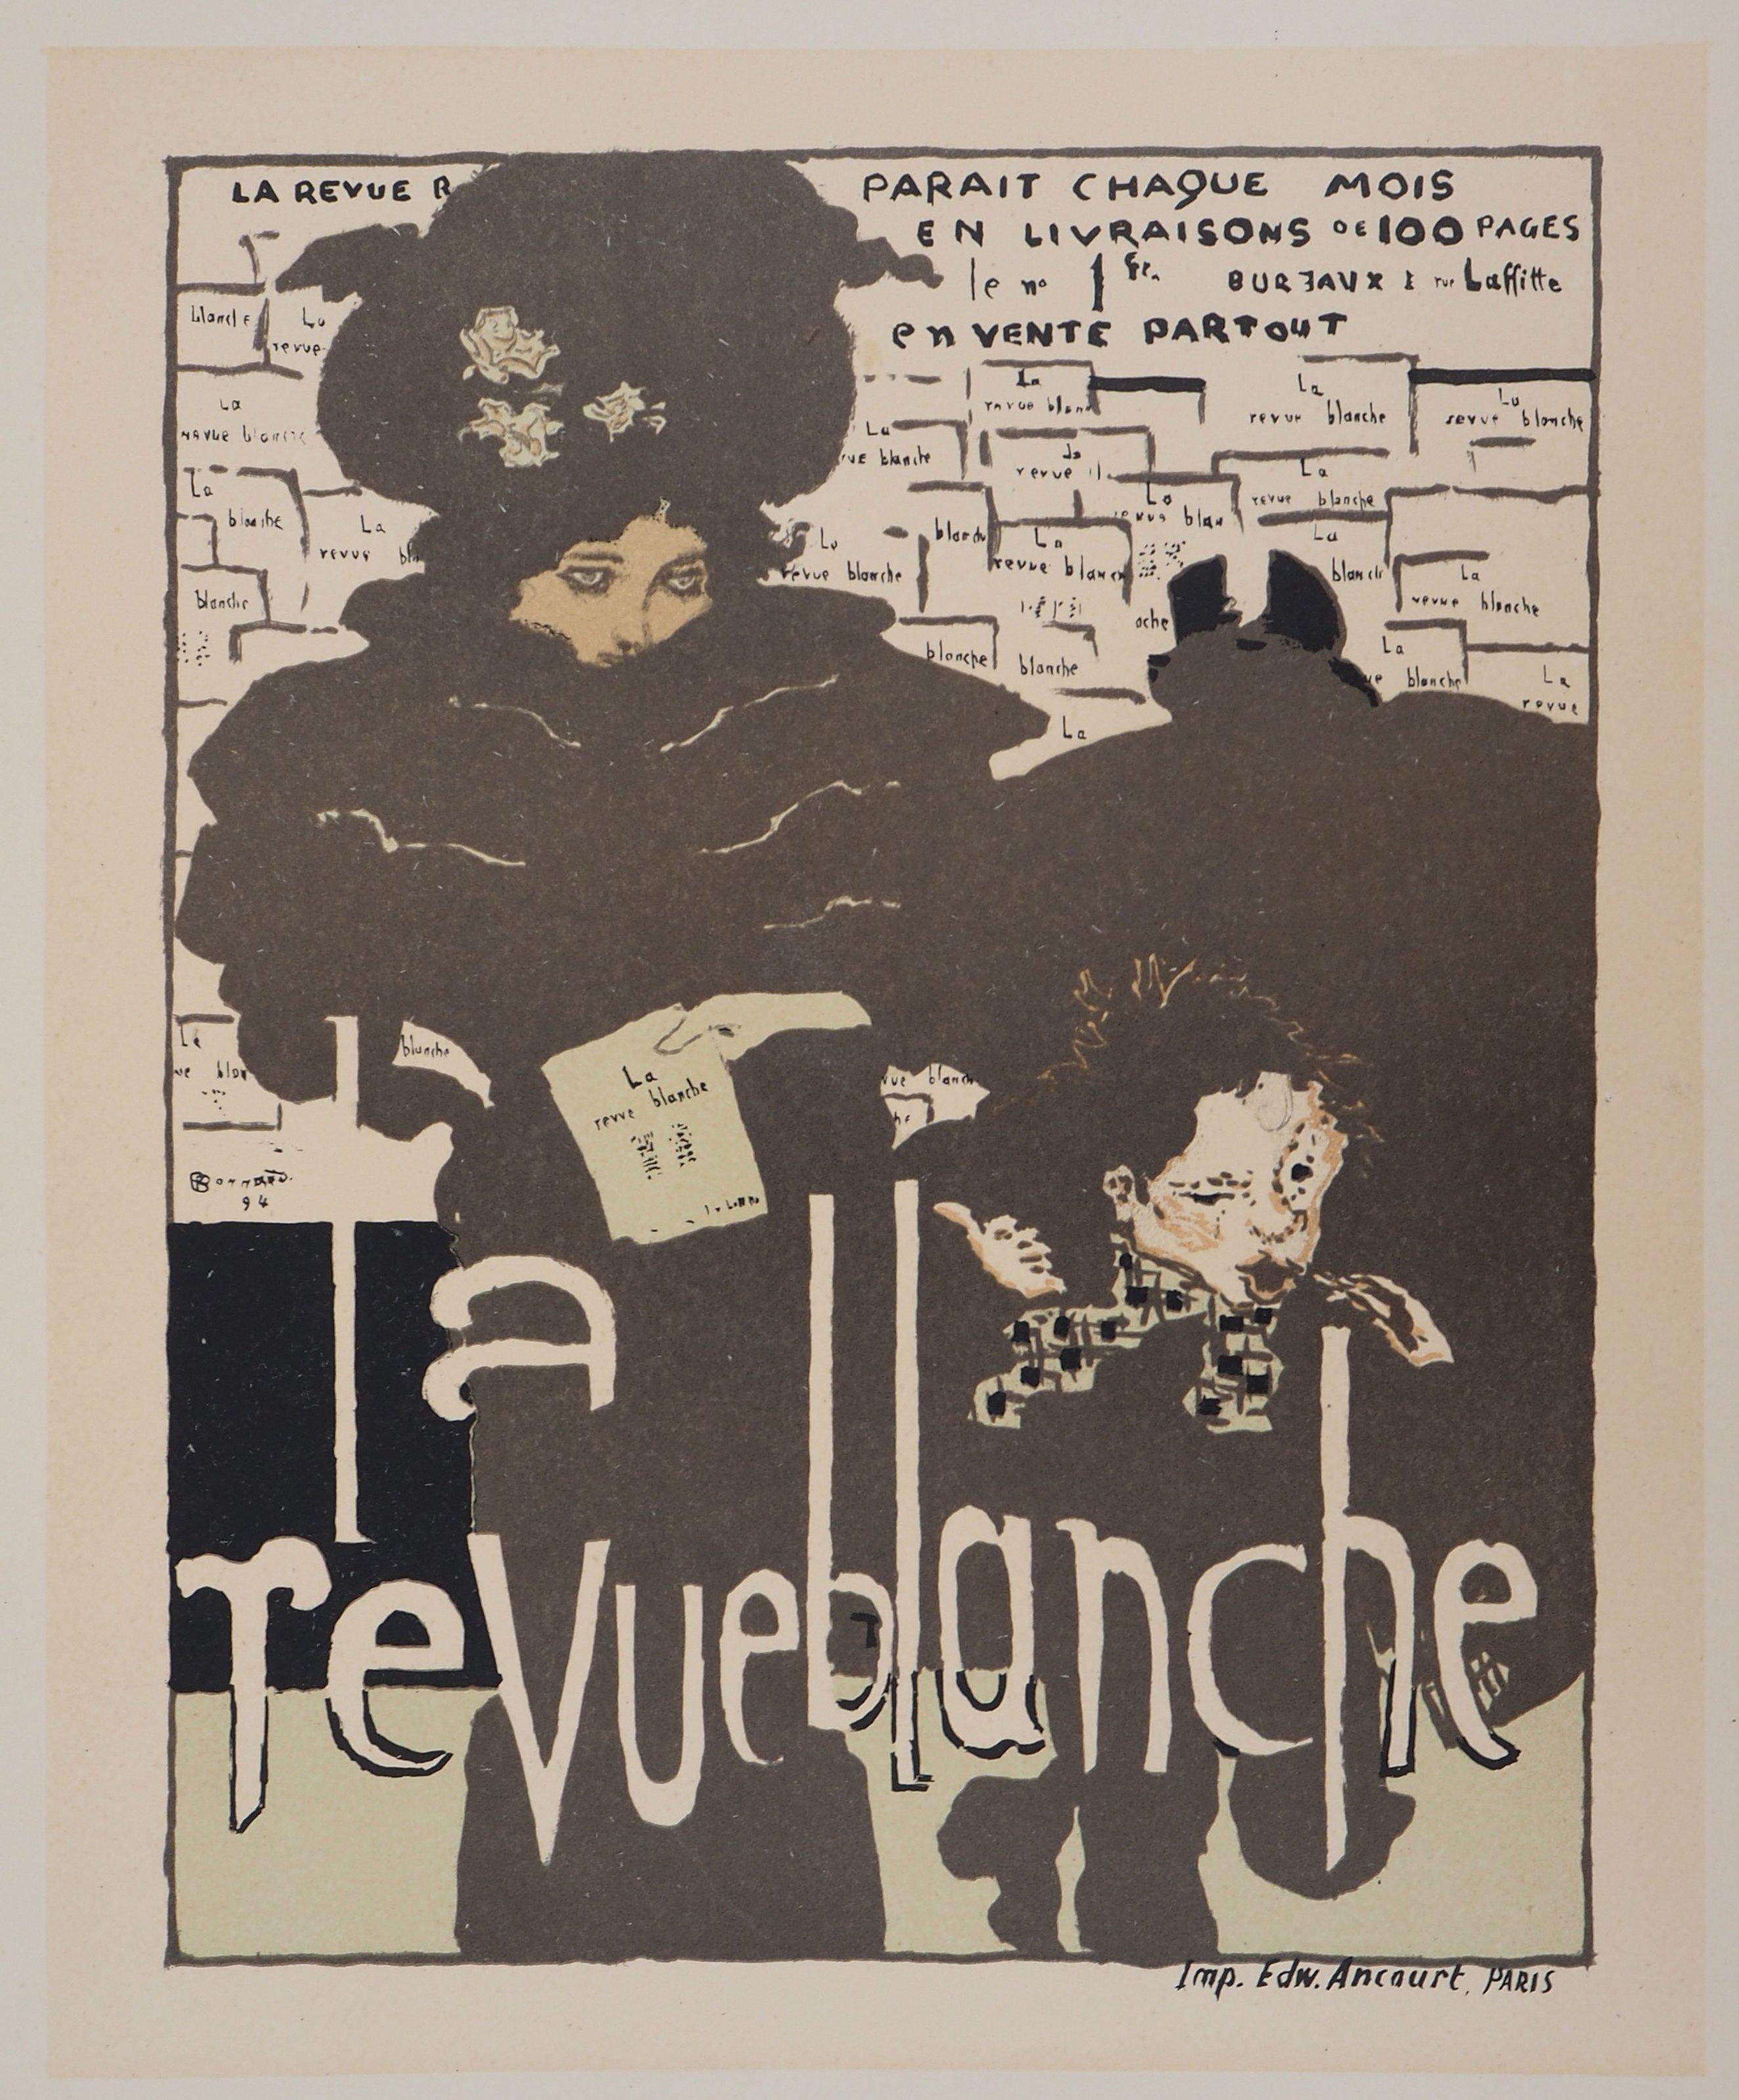  Revue Blanche : The Elegant Woman- Lithograph (Les Maîtres de l'Affiche), 1895 - Black Figurative Print by Pierre Bonnard